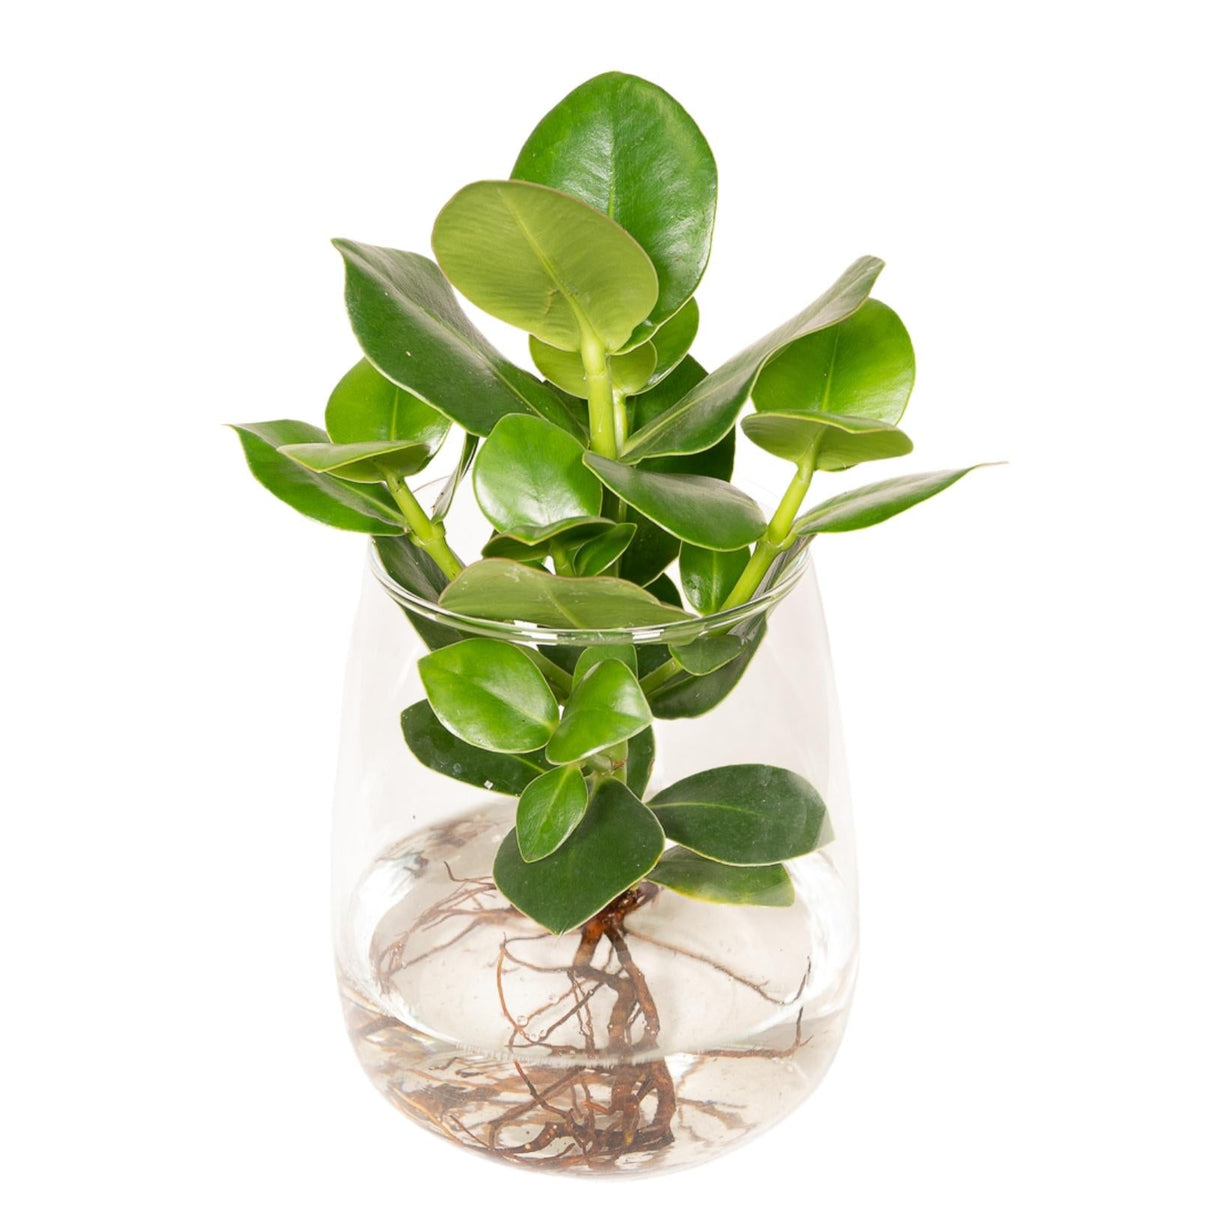 Plante d'intérieur - clusia en hydroculture et son vase en verre - h30cm,  ø12cm 30cm